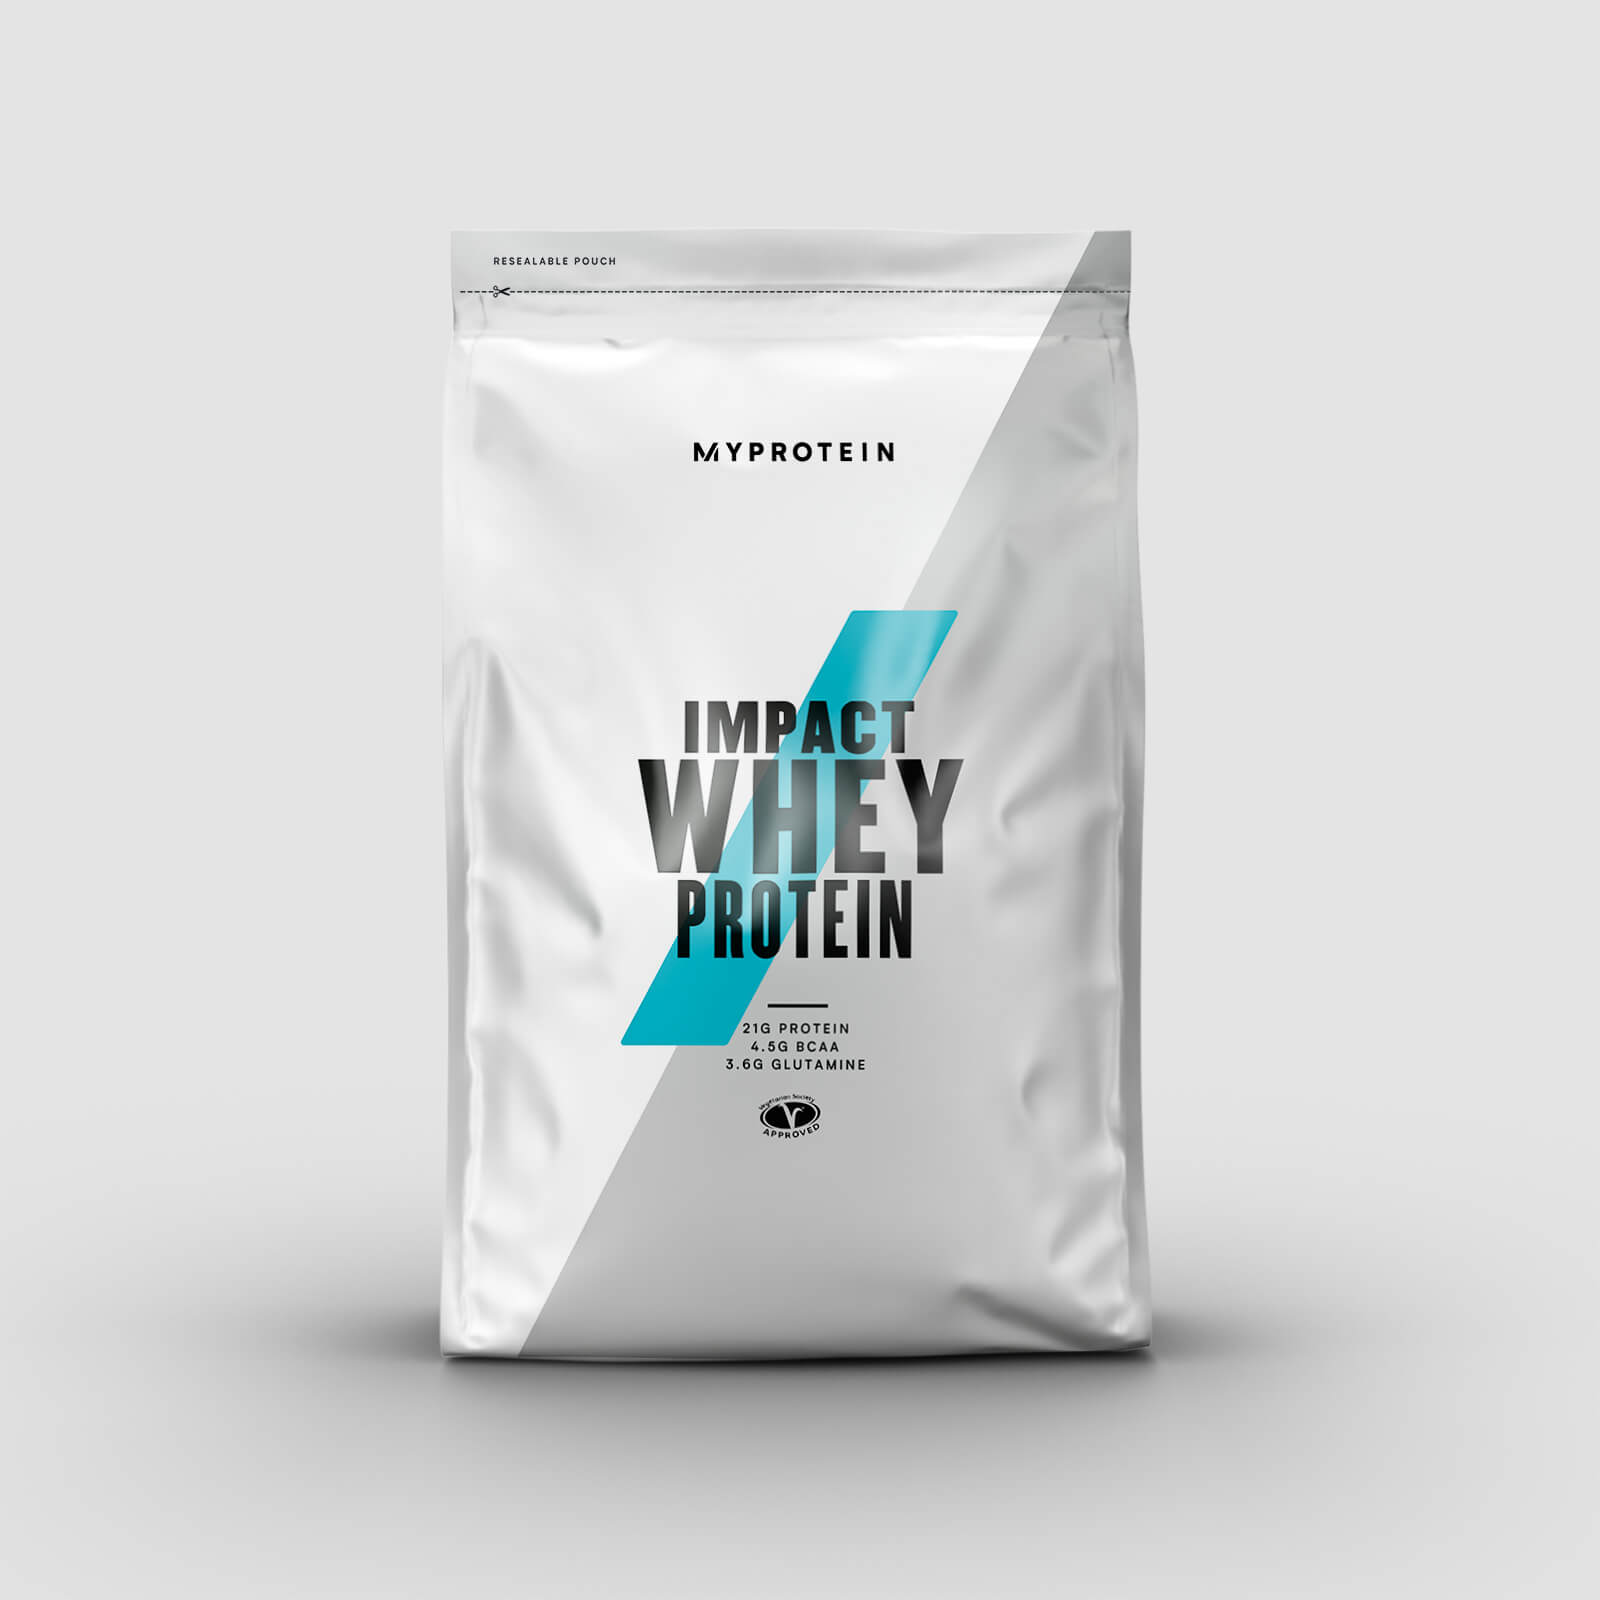 Myprotein Vassleprotein - Impact Whey Protein - 1kg - Chocolate Mint